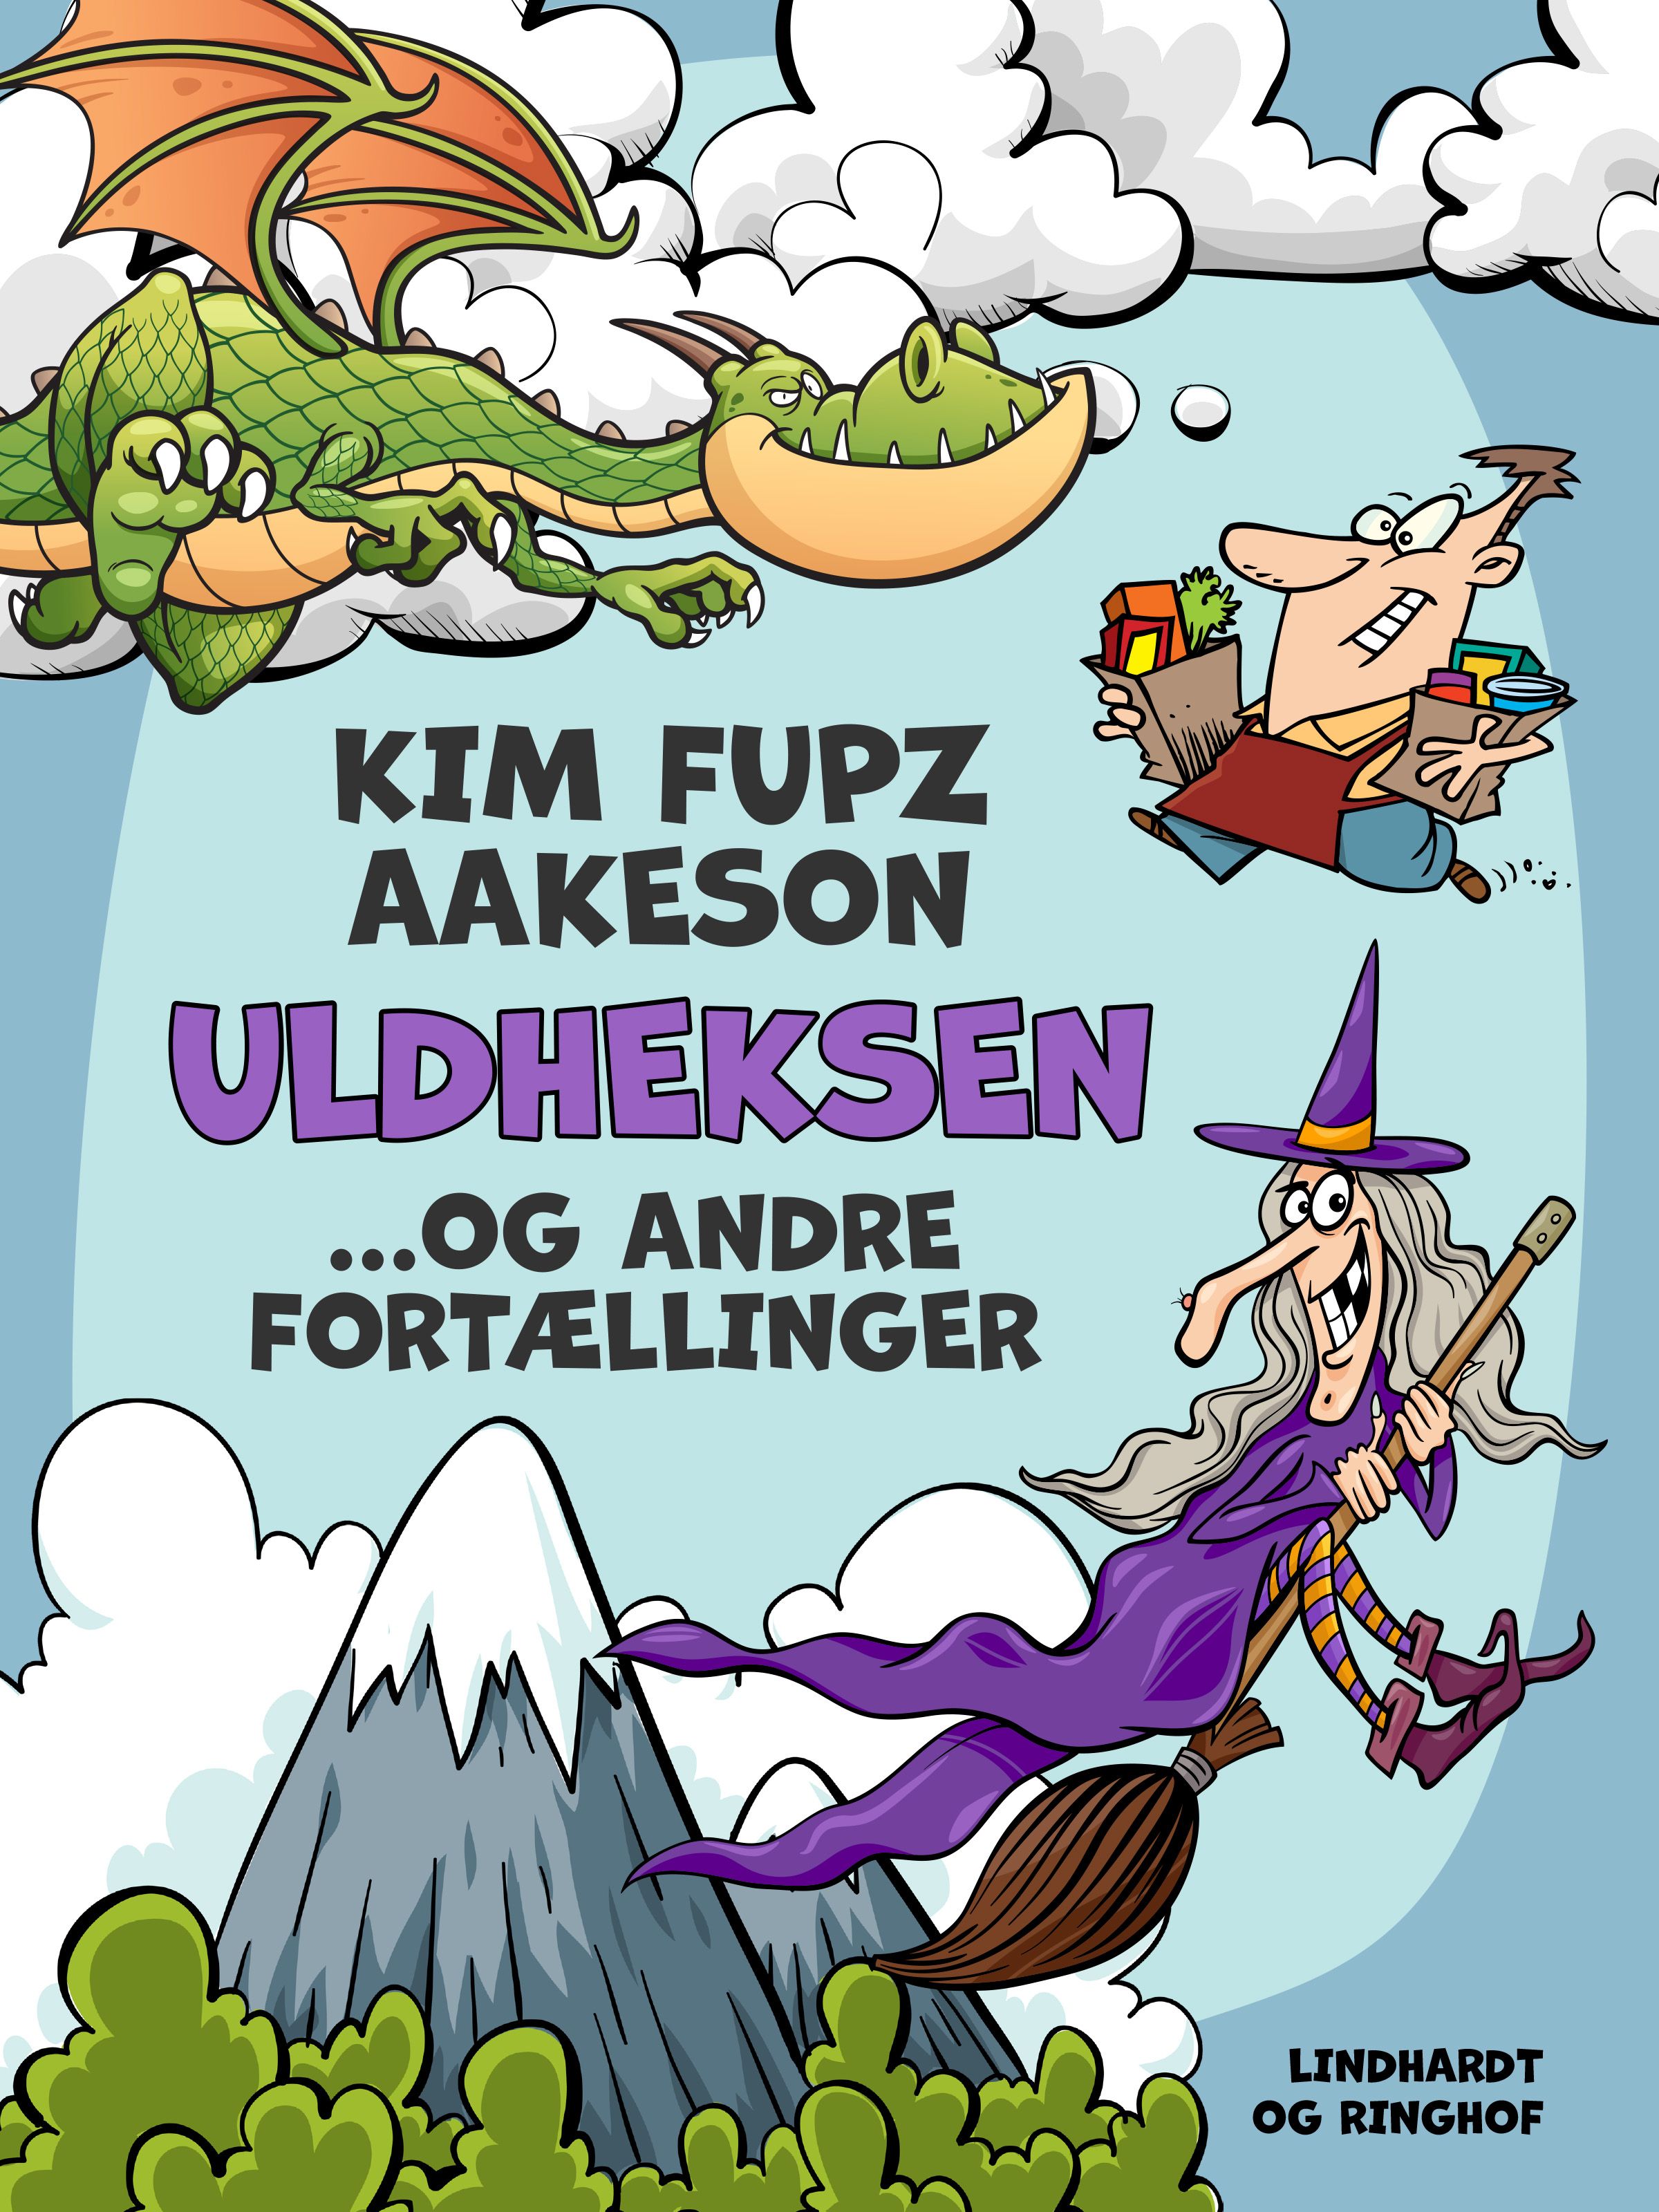 Uldheksen... og andre fortællinger, eBook by Kim Fupz Aakeson